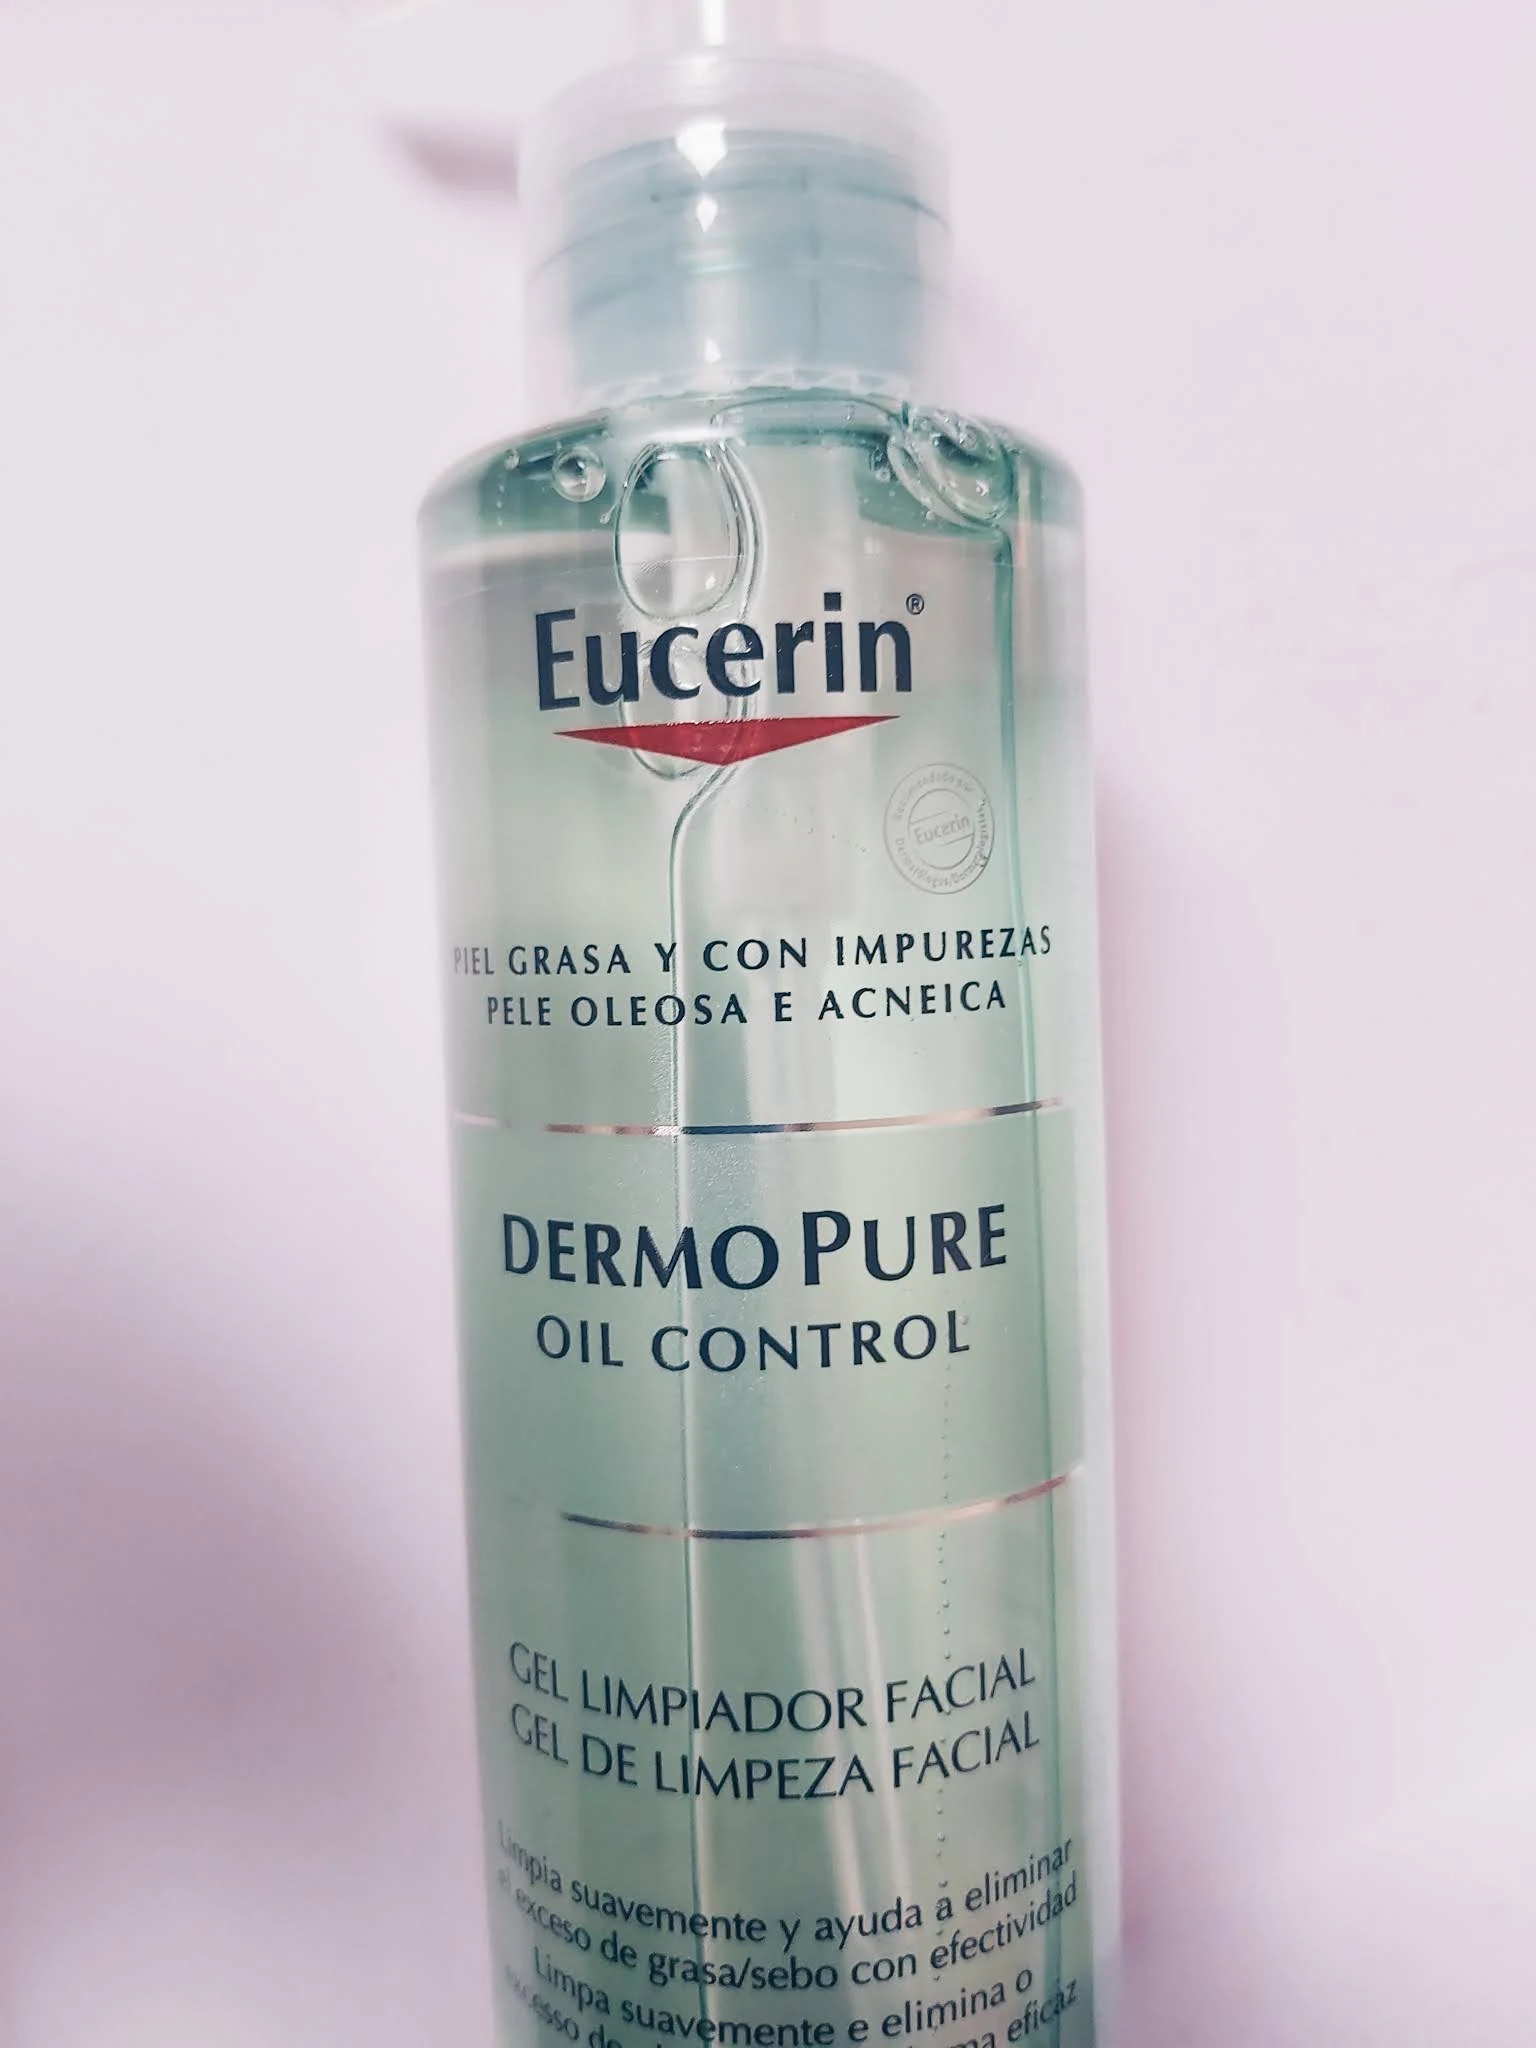 Gel Limpiador Facial DermoPure Oil Control Eucerin – Glow Skincare